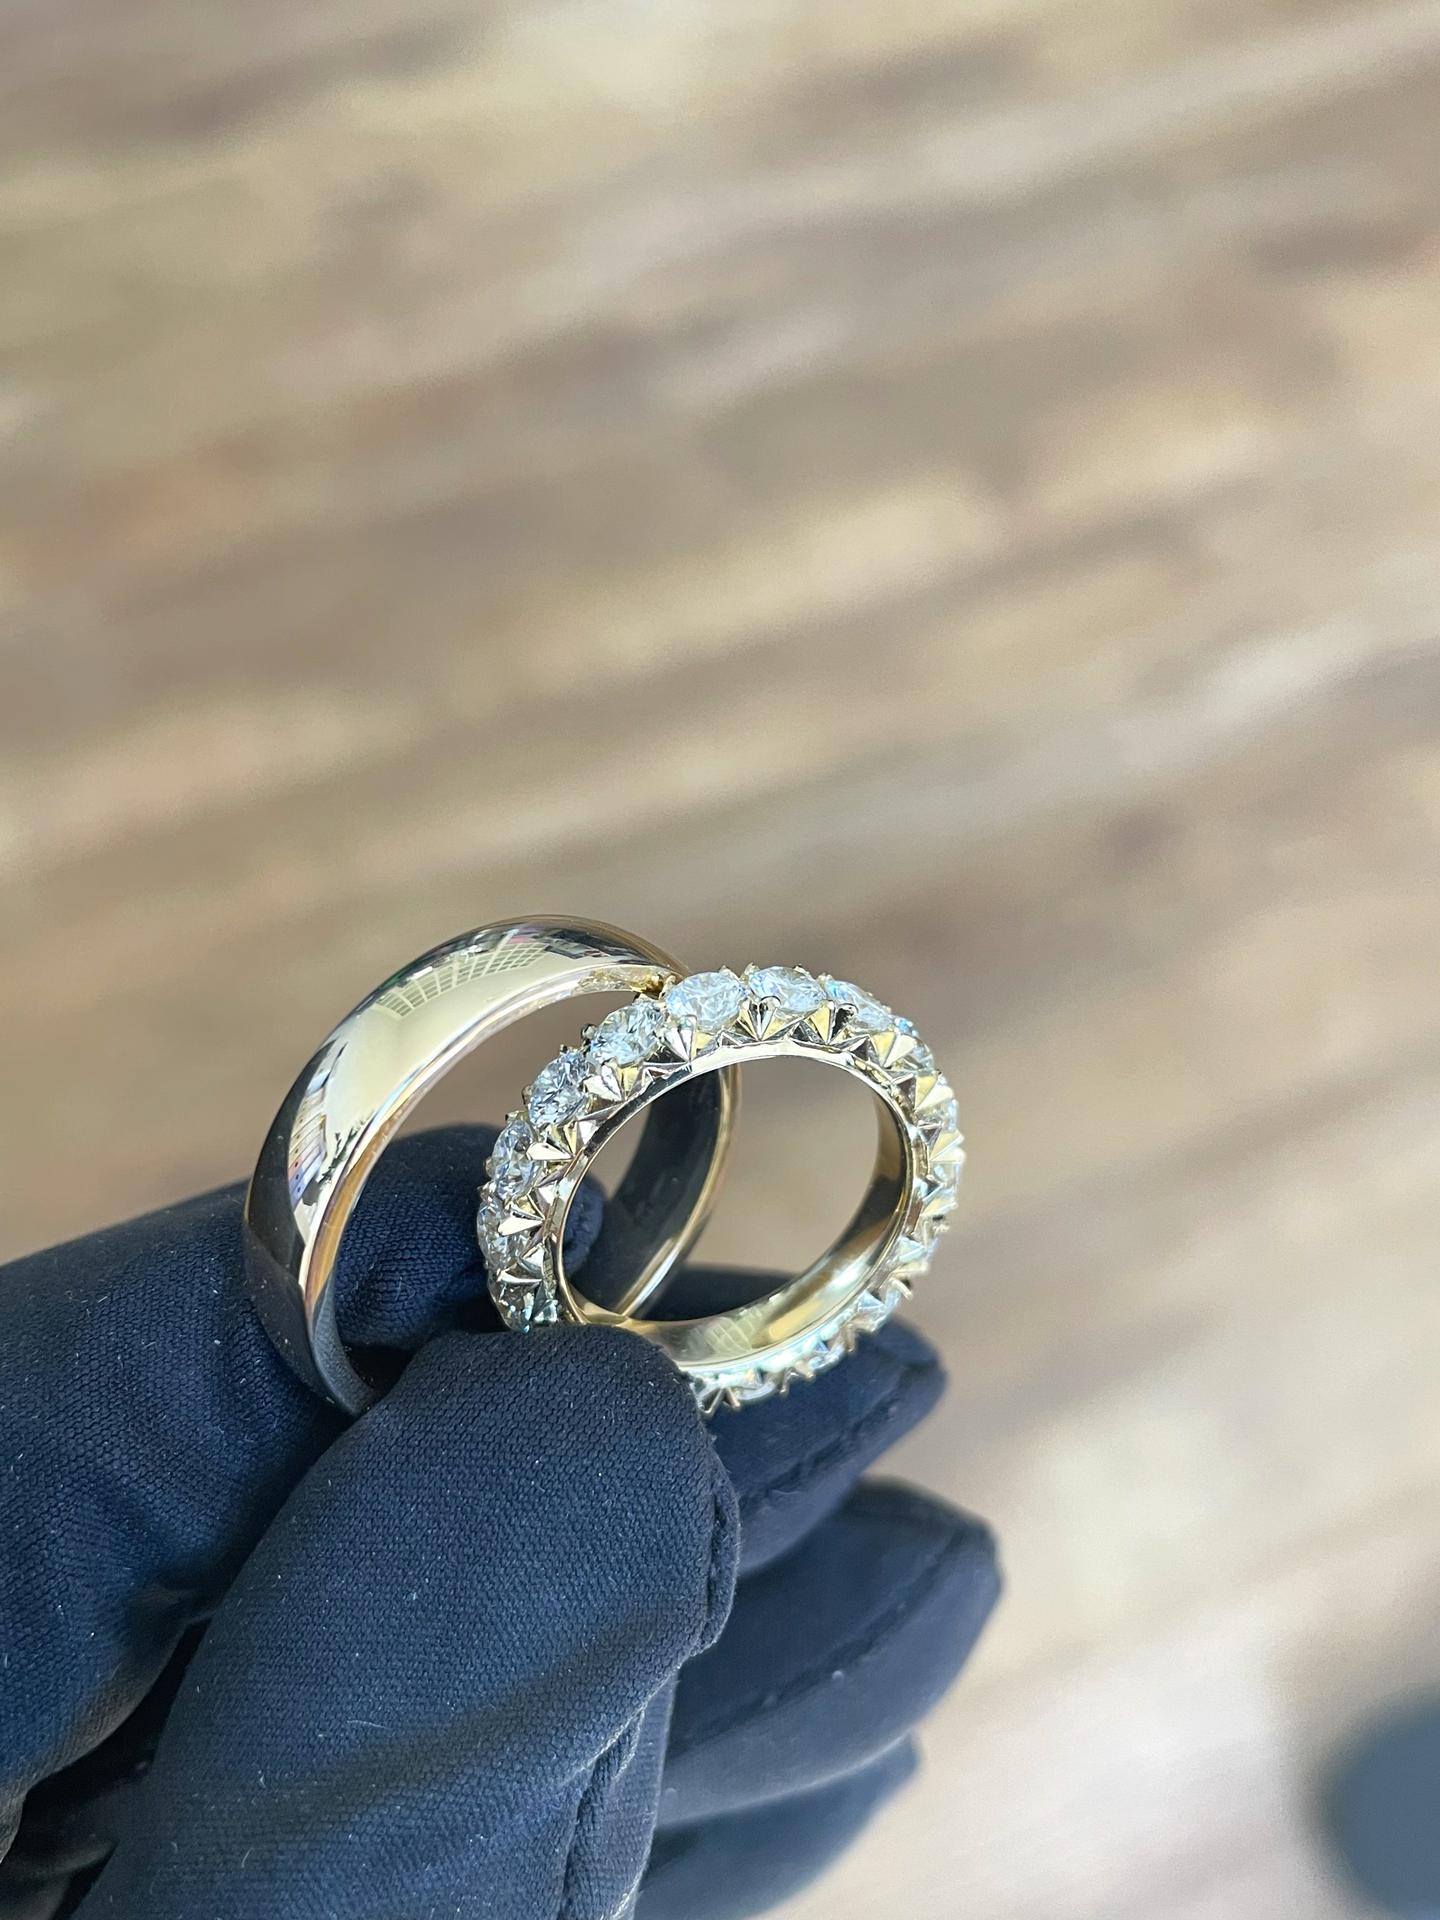 egne - Krásne a masívne obrúčky z 18k zlata. Dámsku zdobia diamanty s priemerom 3.5mm   farbou E-F a čistotou VVS. Dokonalé prstene, vyrobené kompletne ručne.